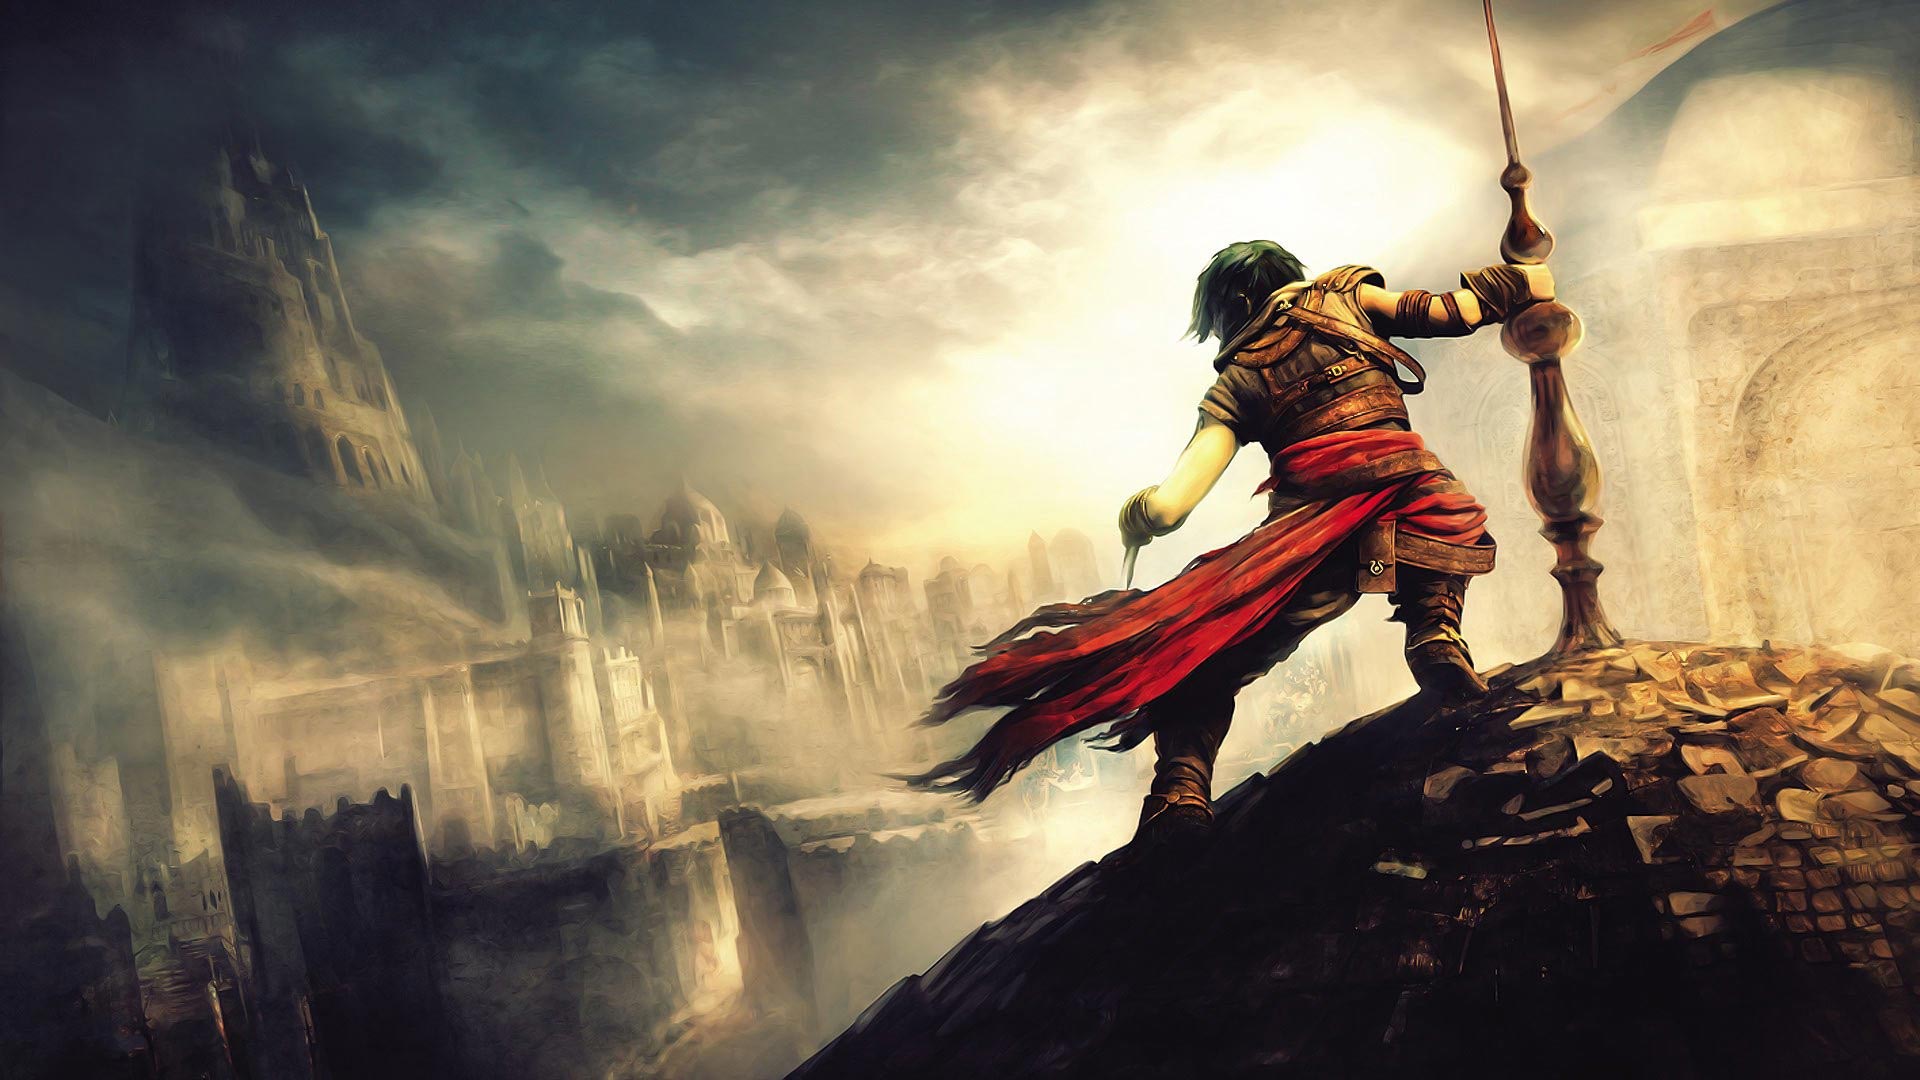  بازی Prince of Persia Remake توسط یک خرده فروشی لیست شد